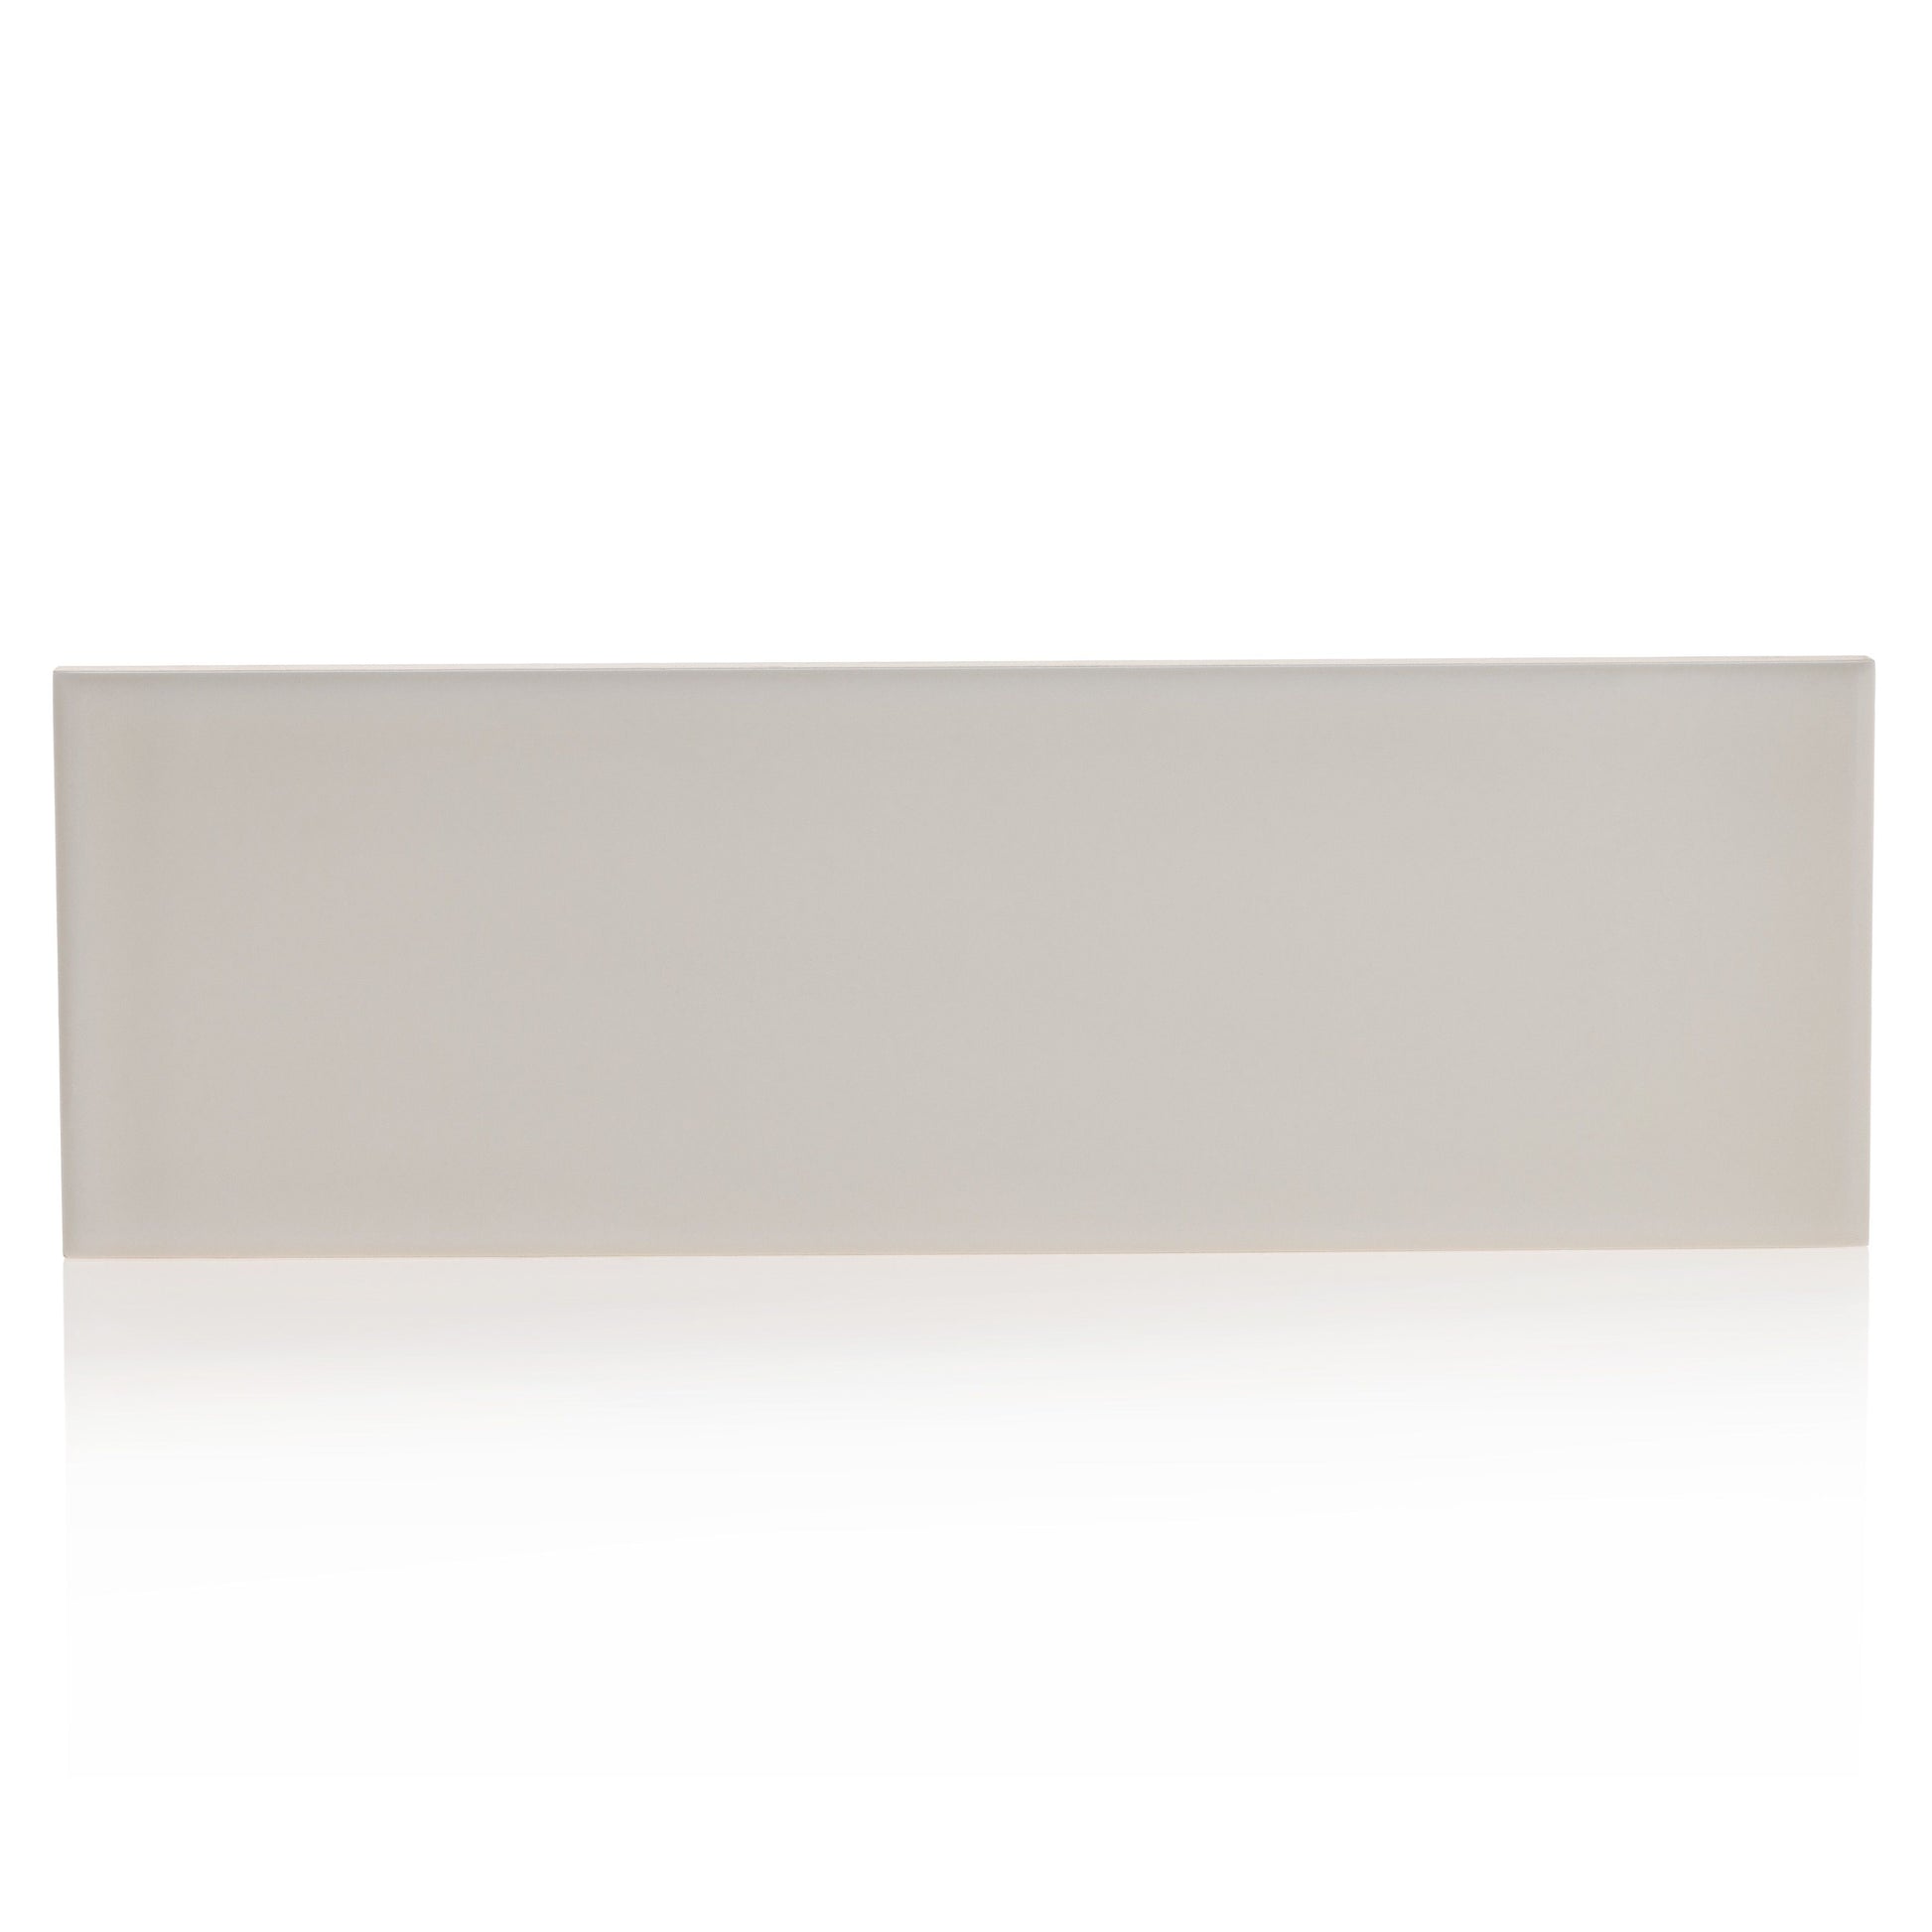 3x9 Timeless Ivory Mist ceramic gloss wall tile - Industry Tile